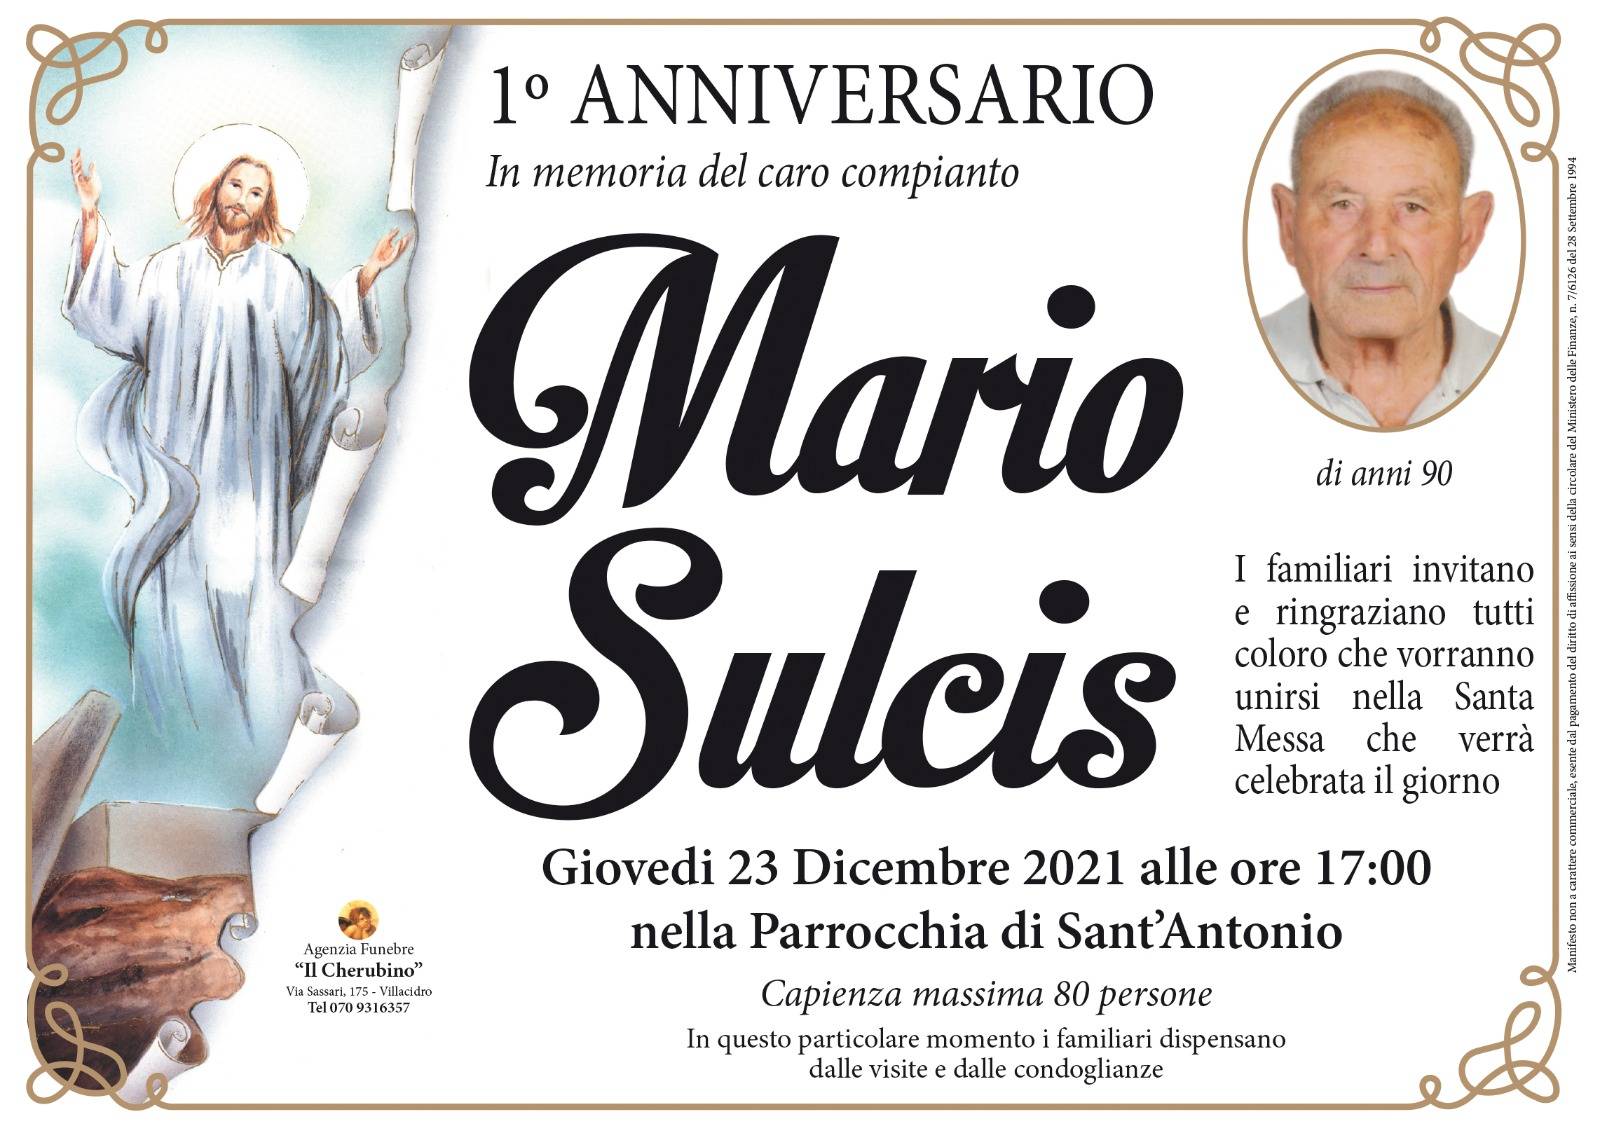 Mario Sulcis